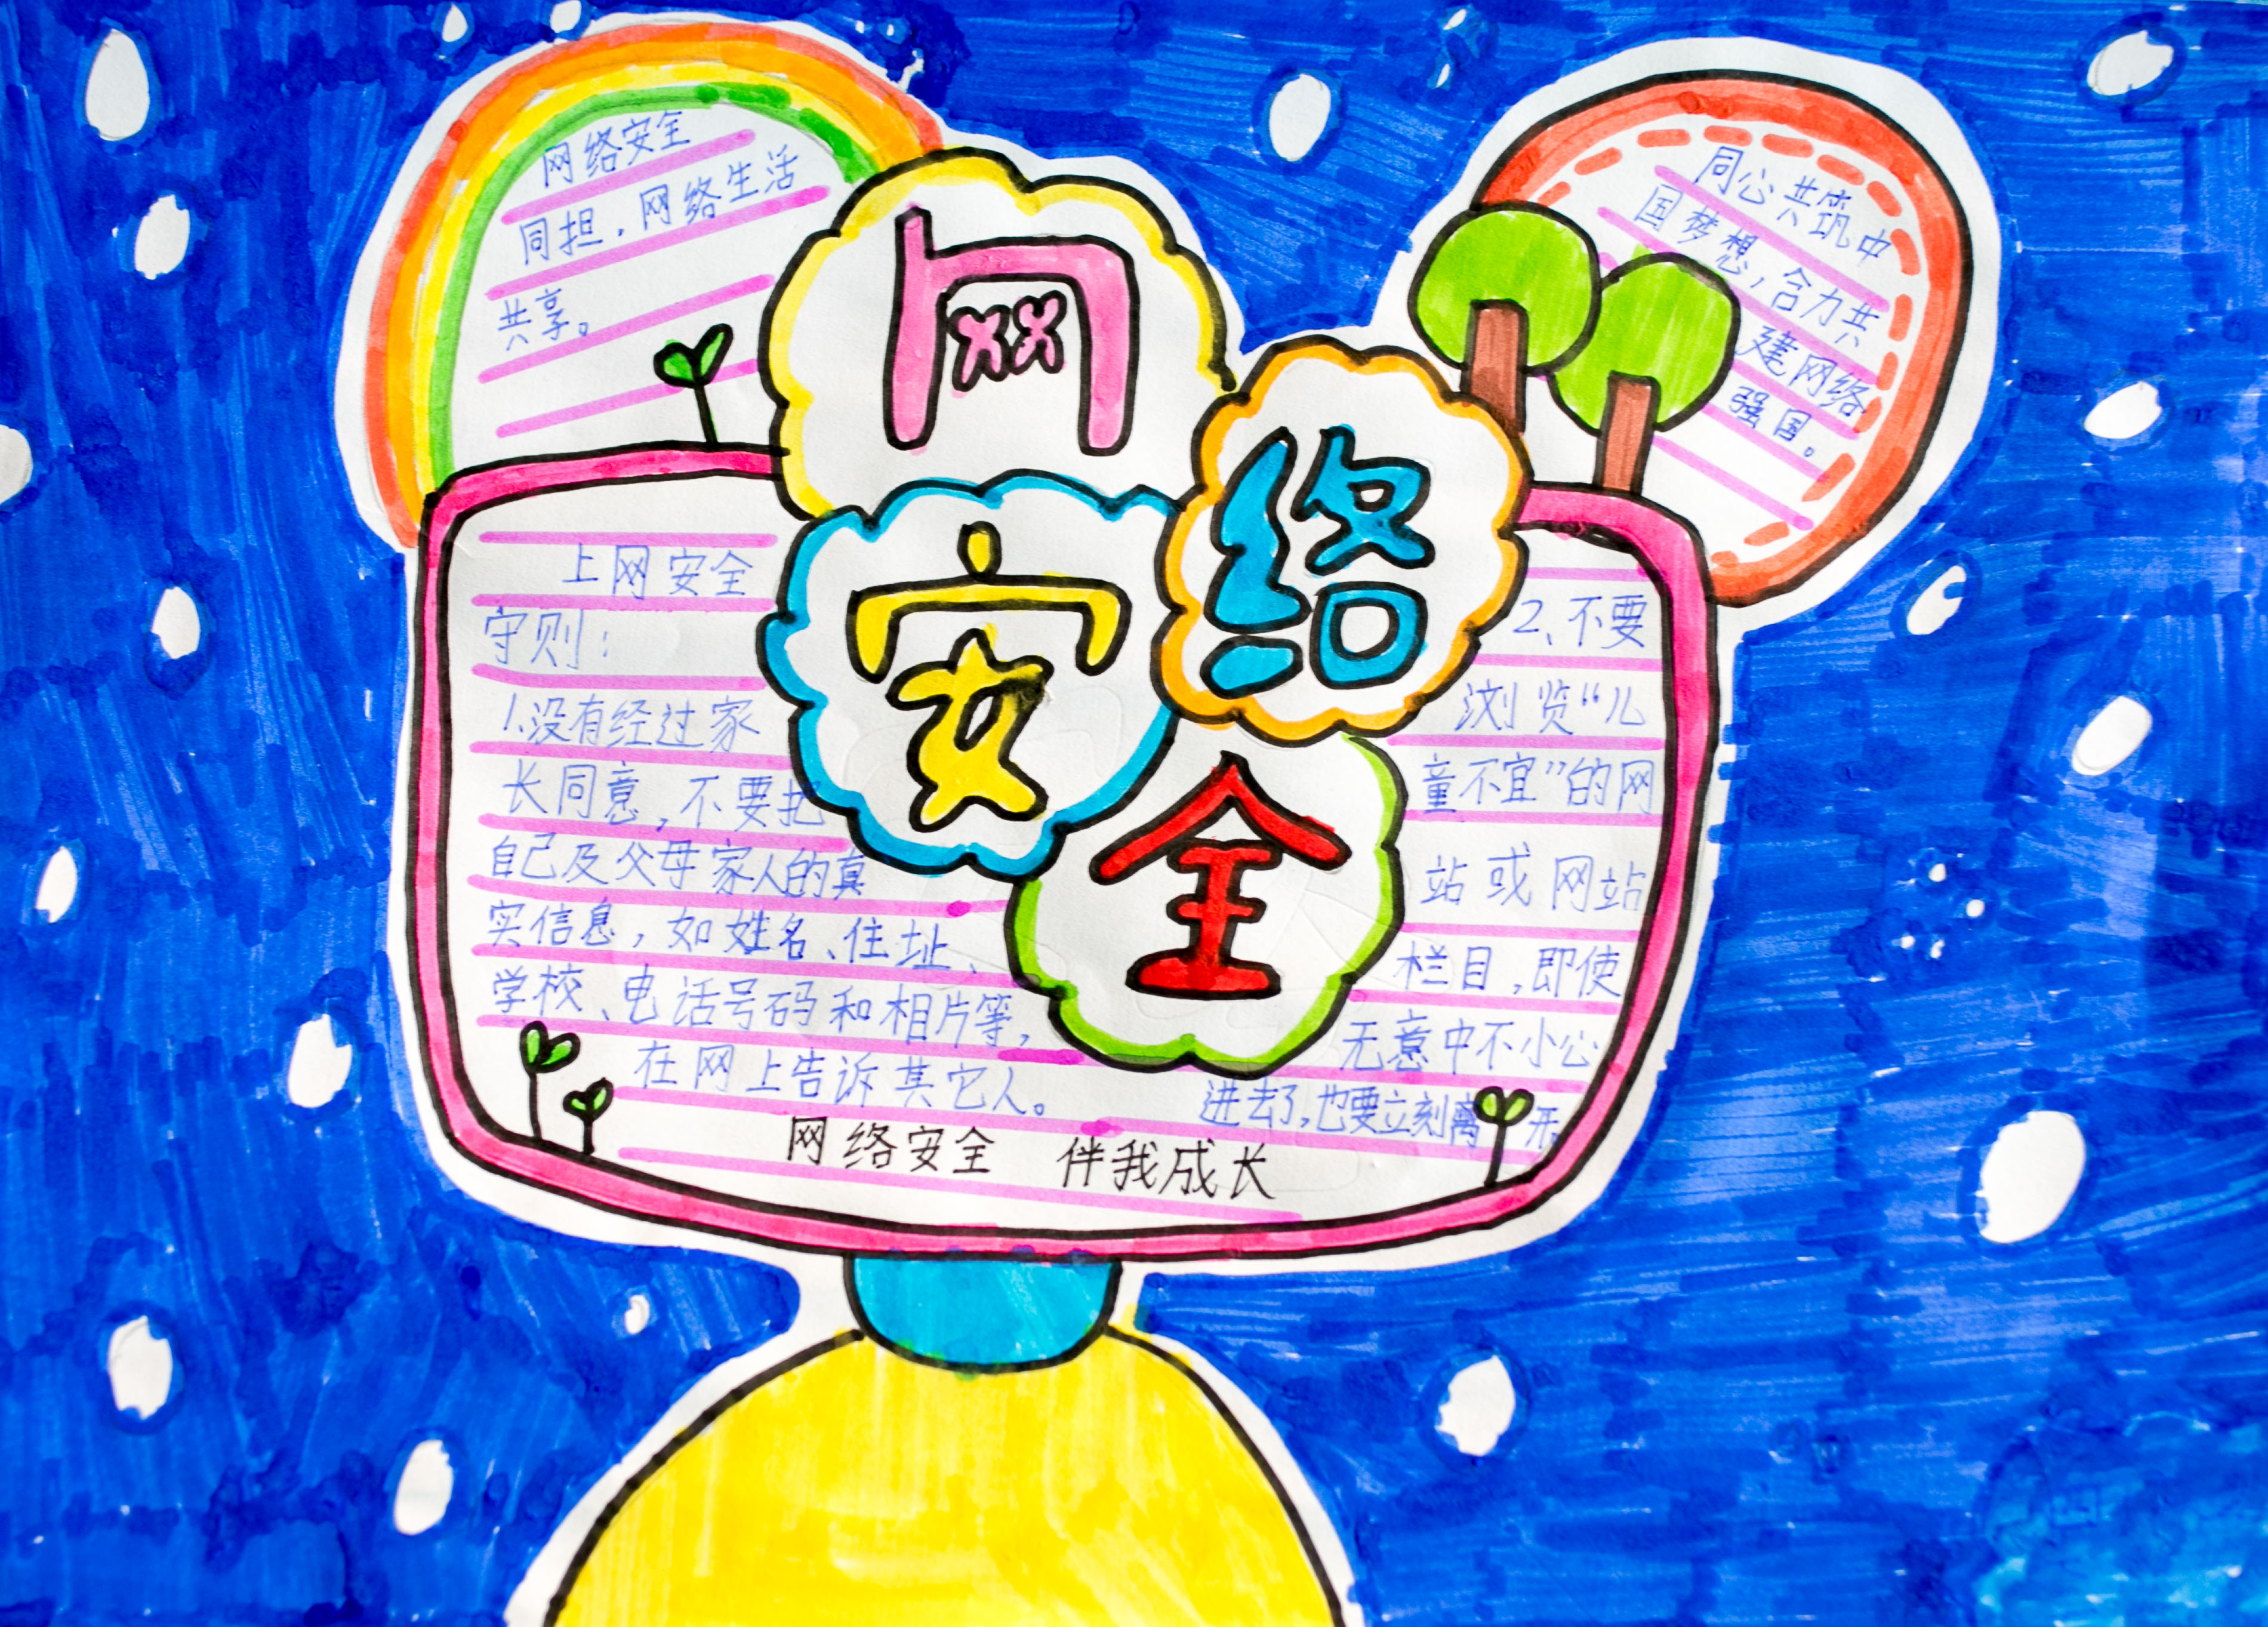 9月15日,呼和浩特市玉泉区恒昌店小学学生绘制的《网络安全》手抄报